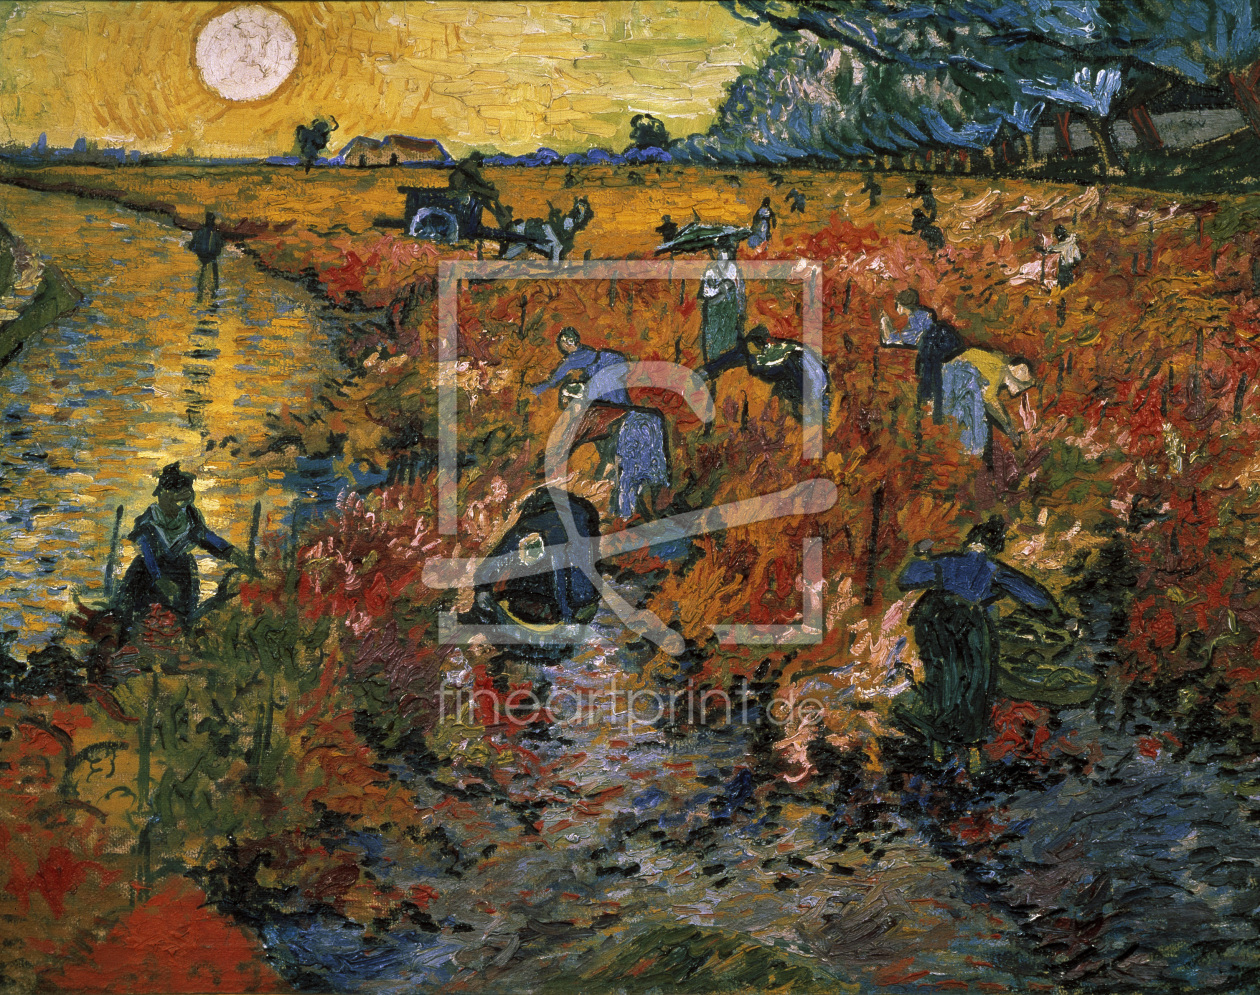 Bild-Nr.: 30003454 van Gogh / The red Vineyard / 1888 erstellt von van Gogh, Vincent